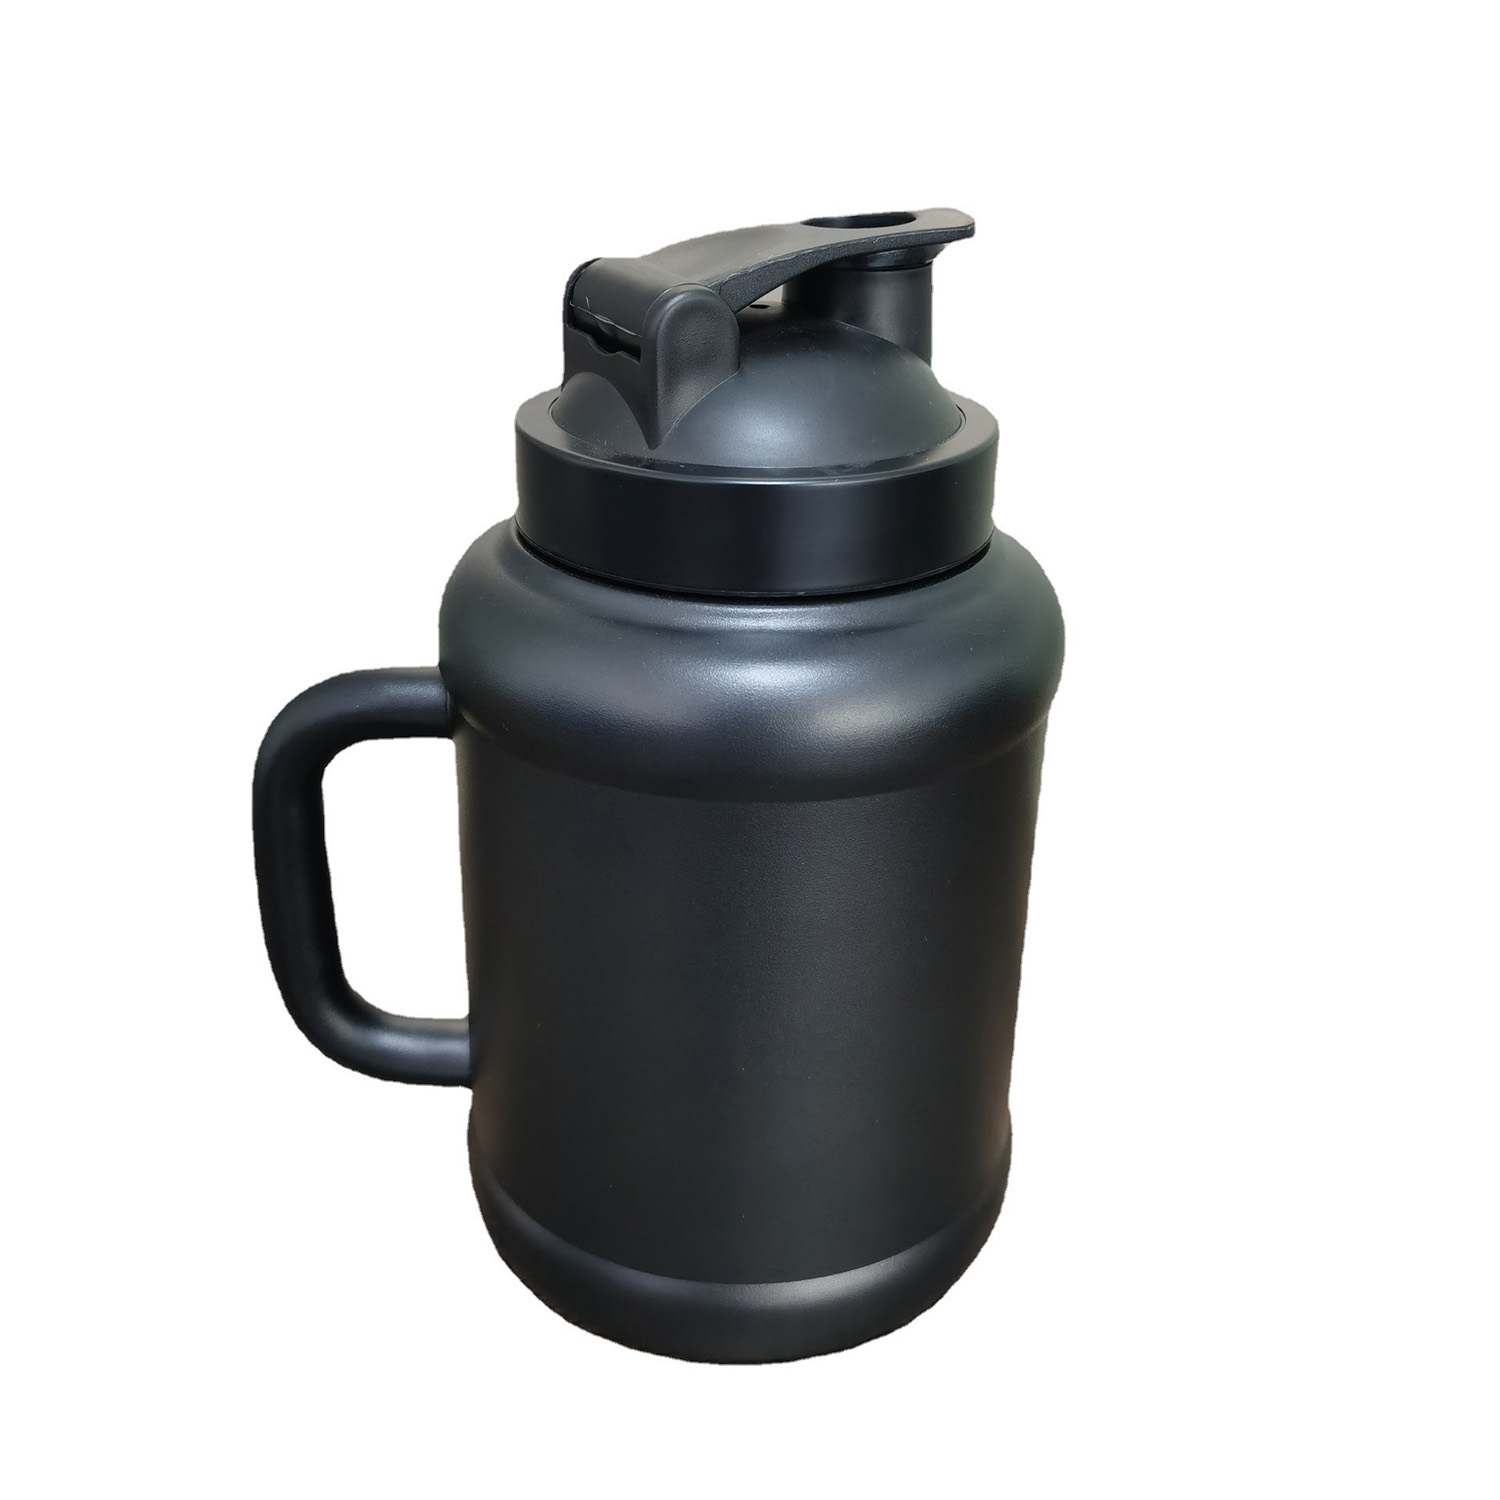 https://www.waterbottle.tech/wp-content/uploads/2022/03/Water-Jug-1.5L-2.5L-Big-Water-Bottle-50OZ-85oz-Sports-Gallon-Capacity-s11150051-3.jpg